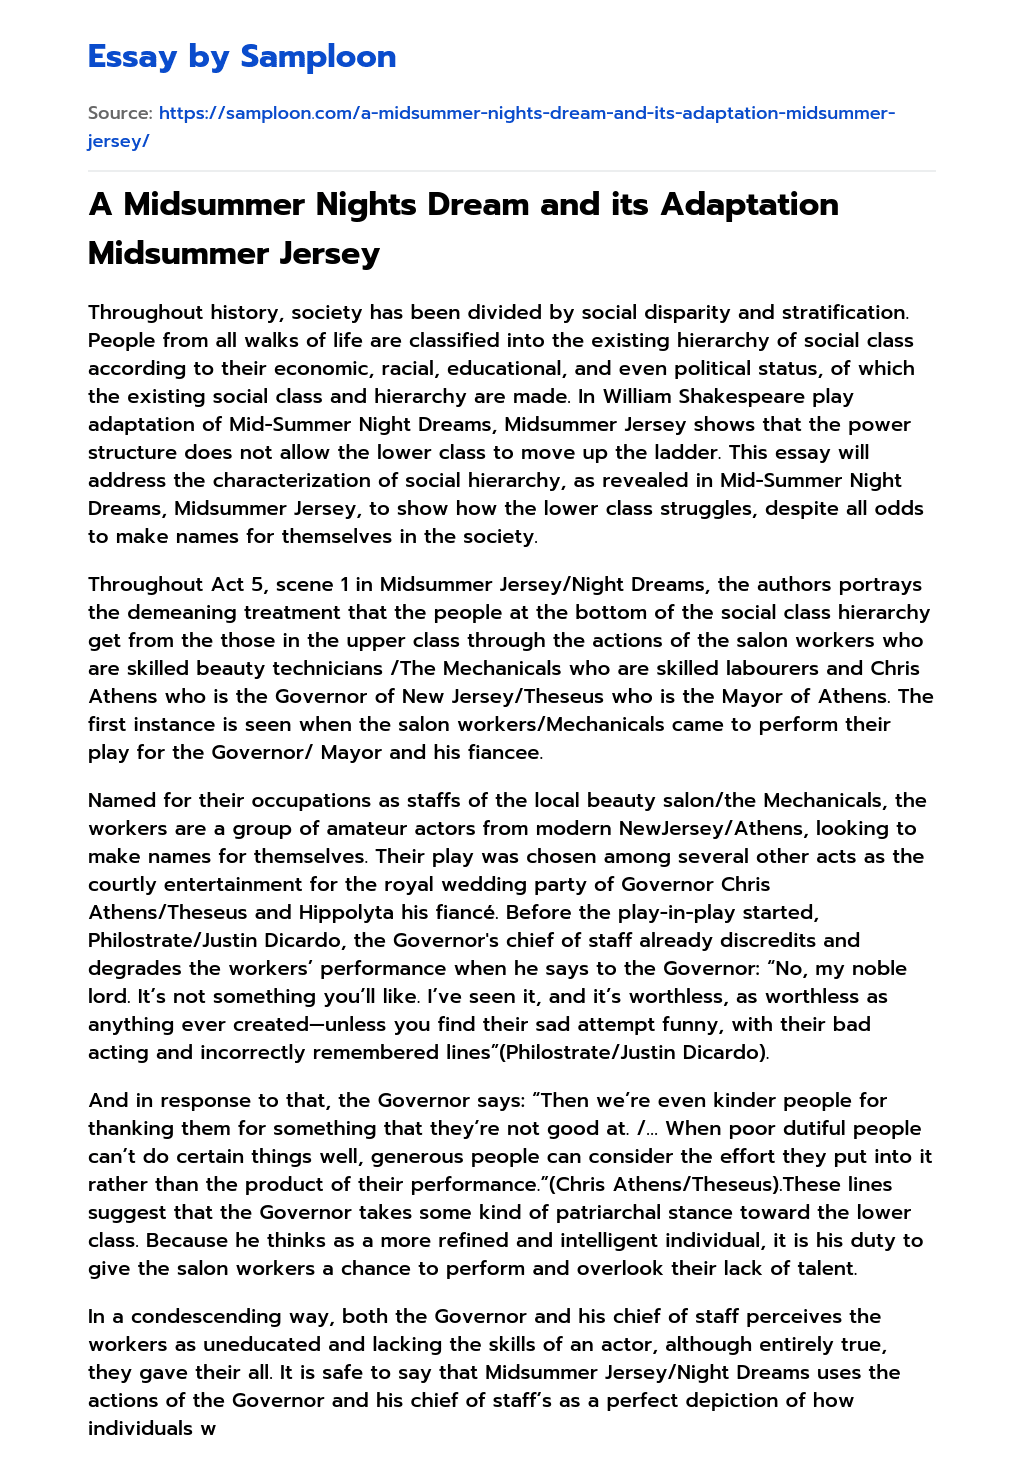 A Midsummer Nights Dream and its Adaptation Midsummer Jersey essay